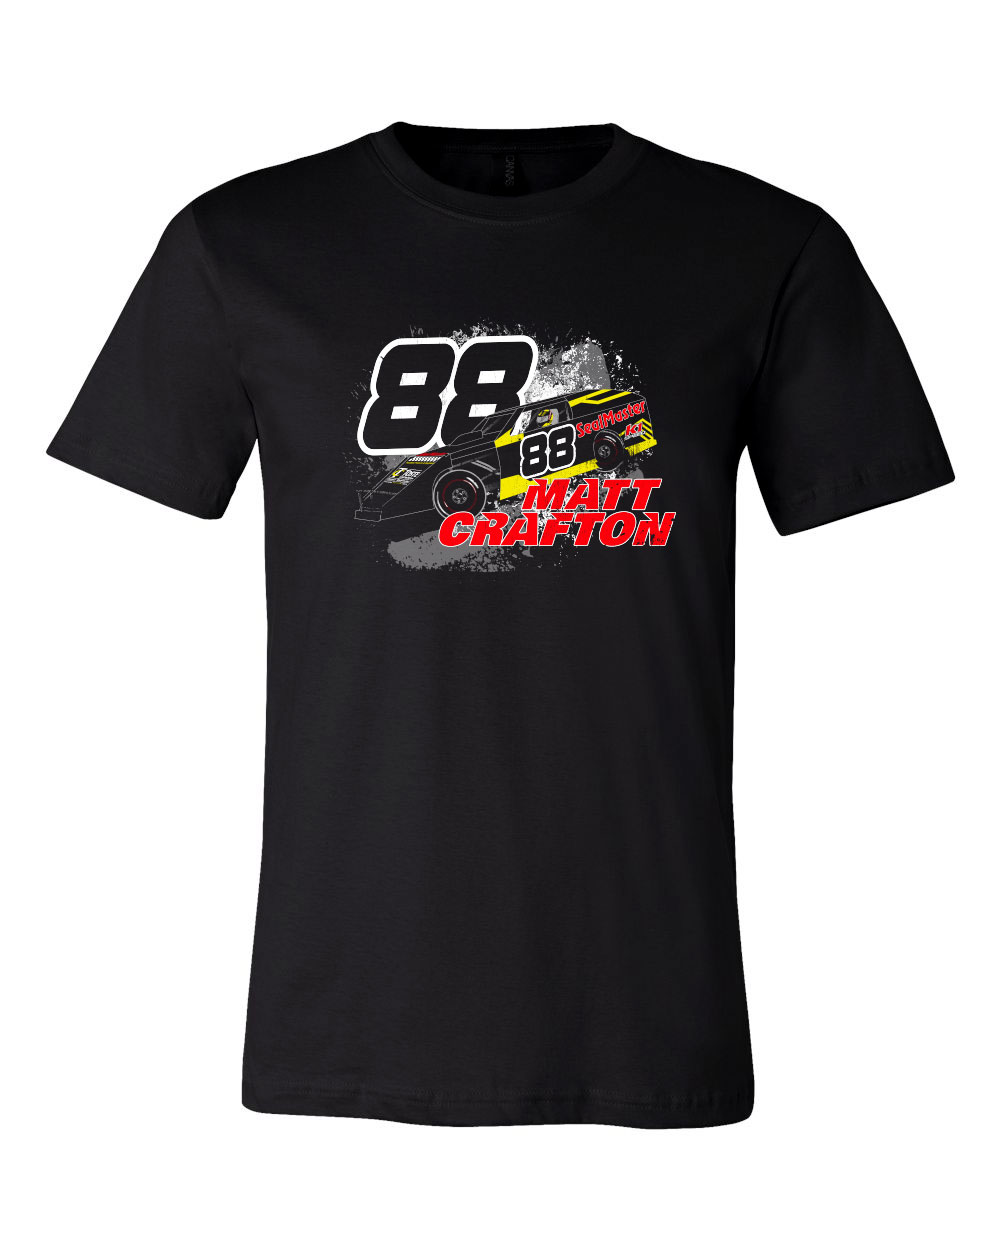 Matt Crafton NASCAR T-Shirt Design